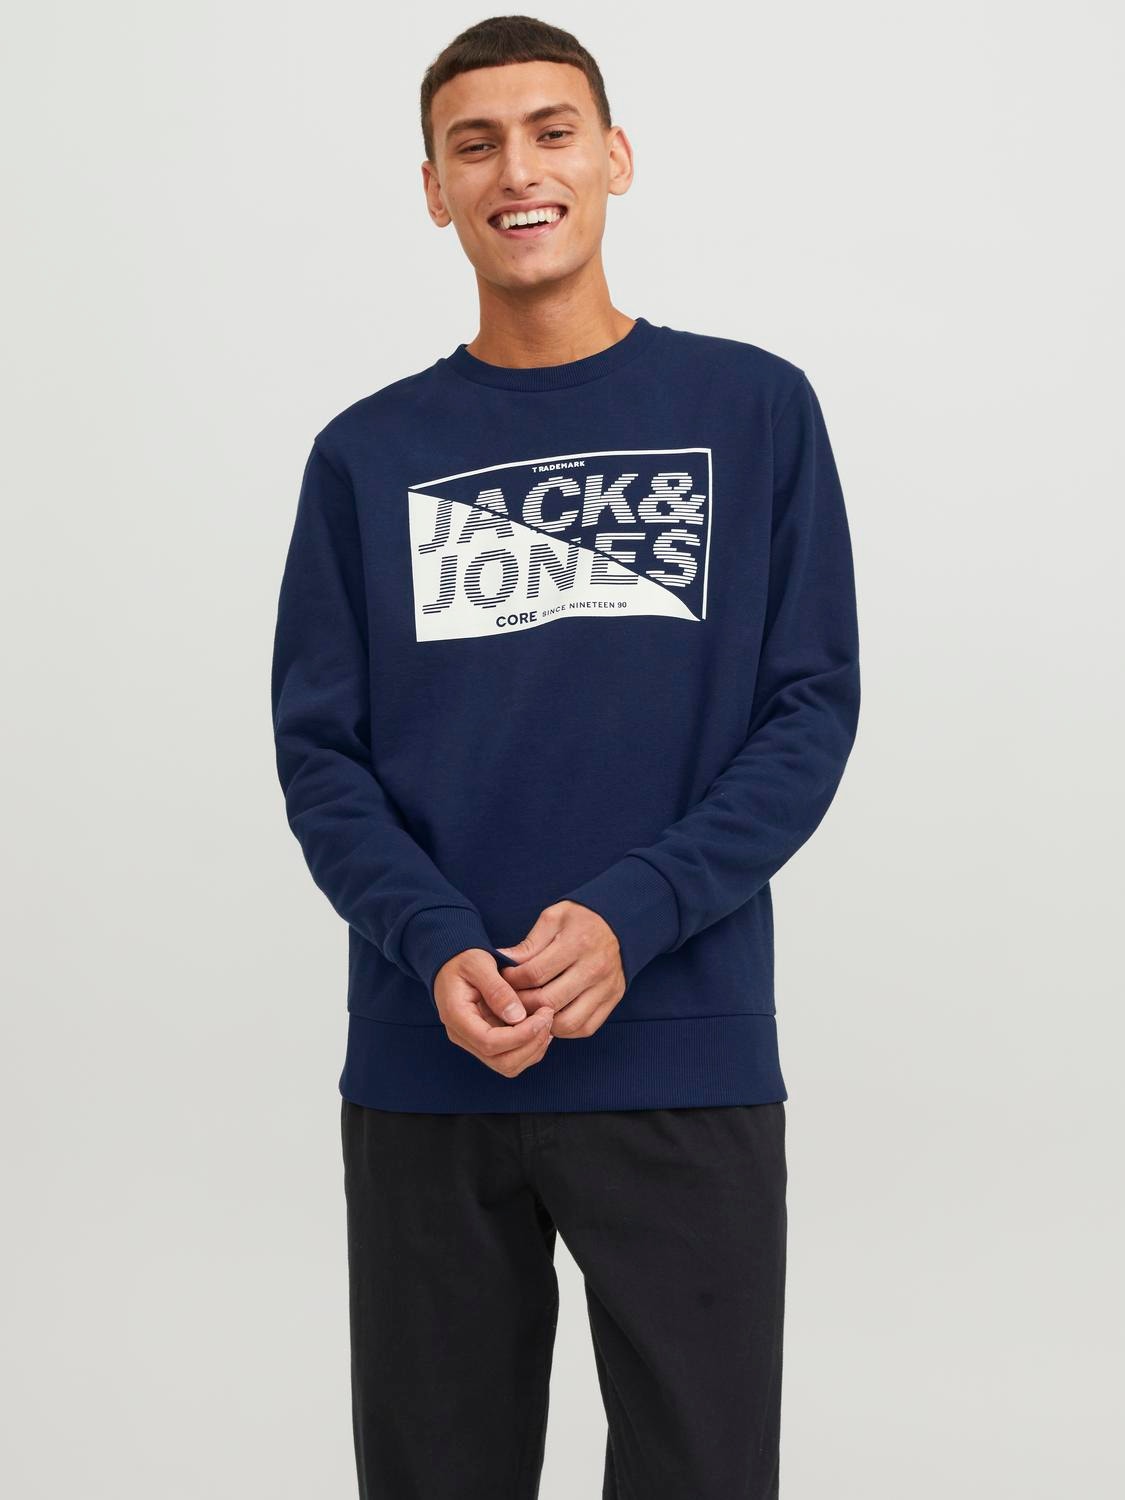 Jack & Jones Logo Crew neck Sweatshirt -Navy Blazer - 12243922